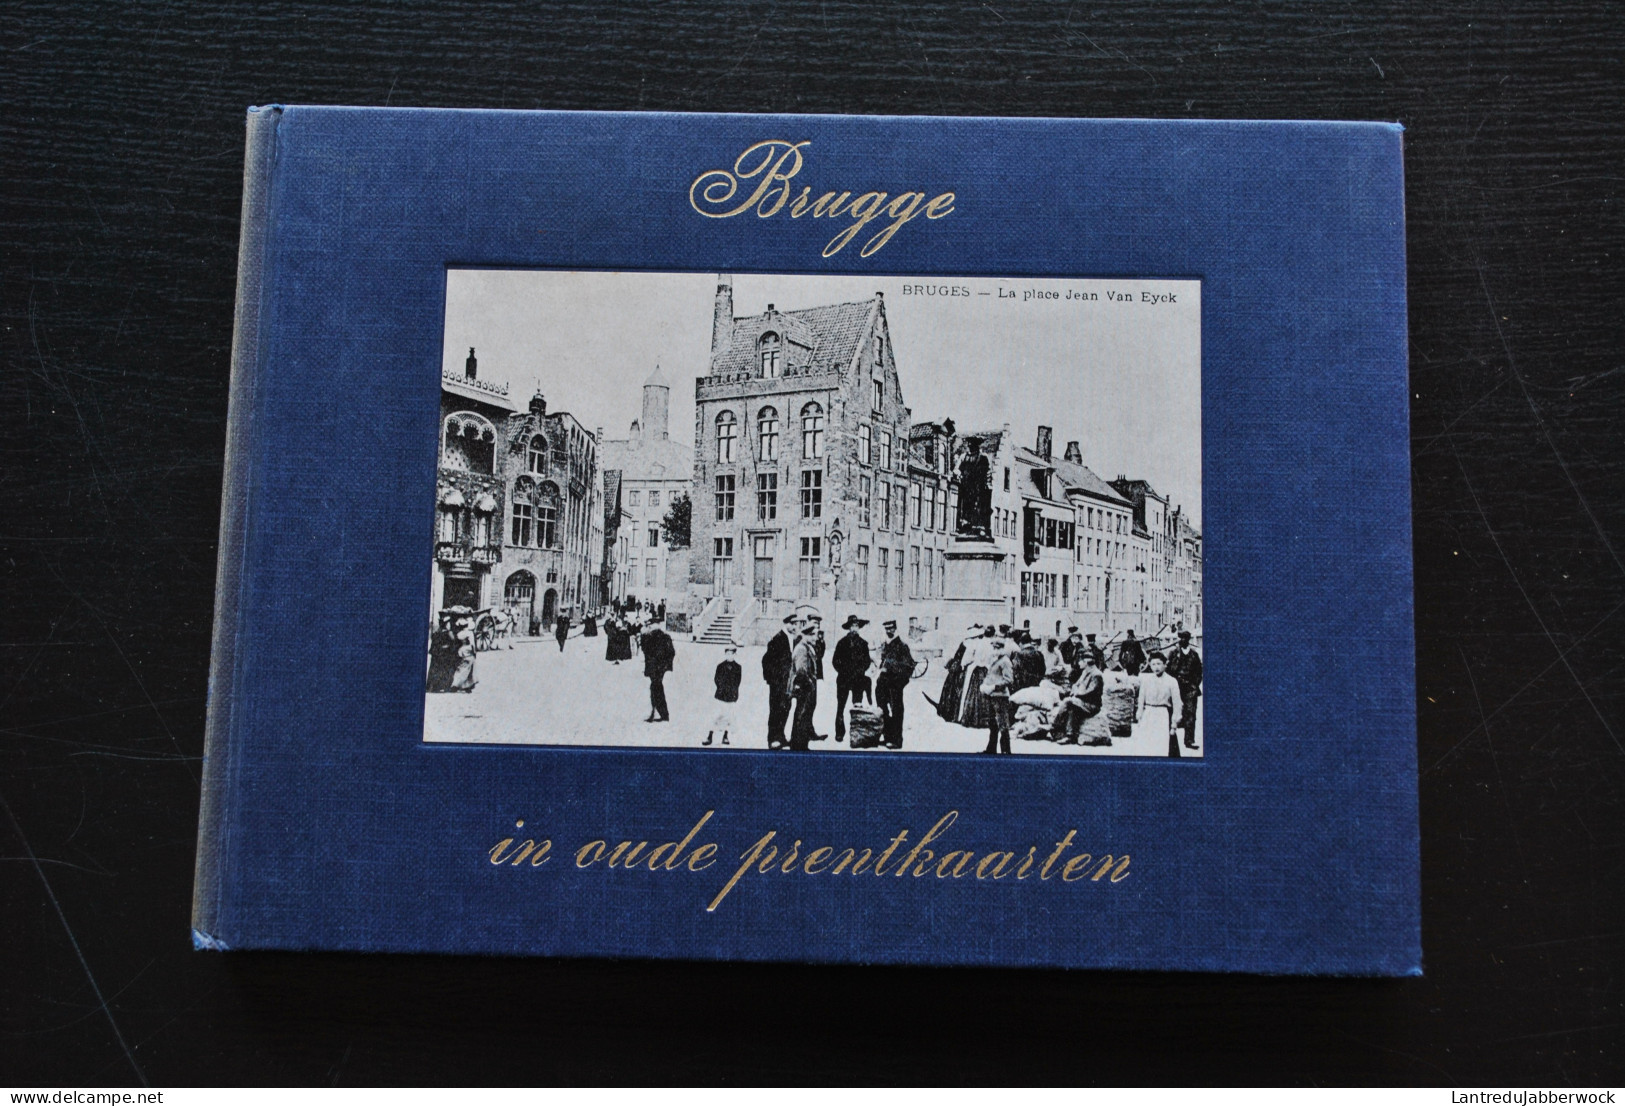 BRUGGE In Oude Prentkaarten Régionalisme Kruispoort Dampoort Van Eyckplein 14 18 Oorlog Bruges Cartes Postales Anciennes - Belgien